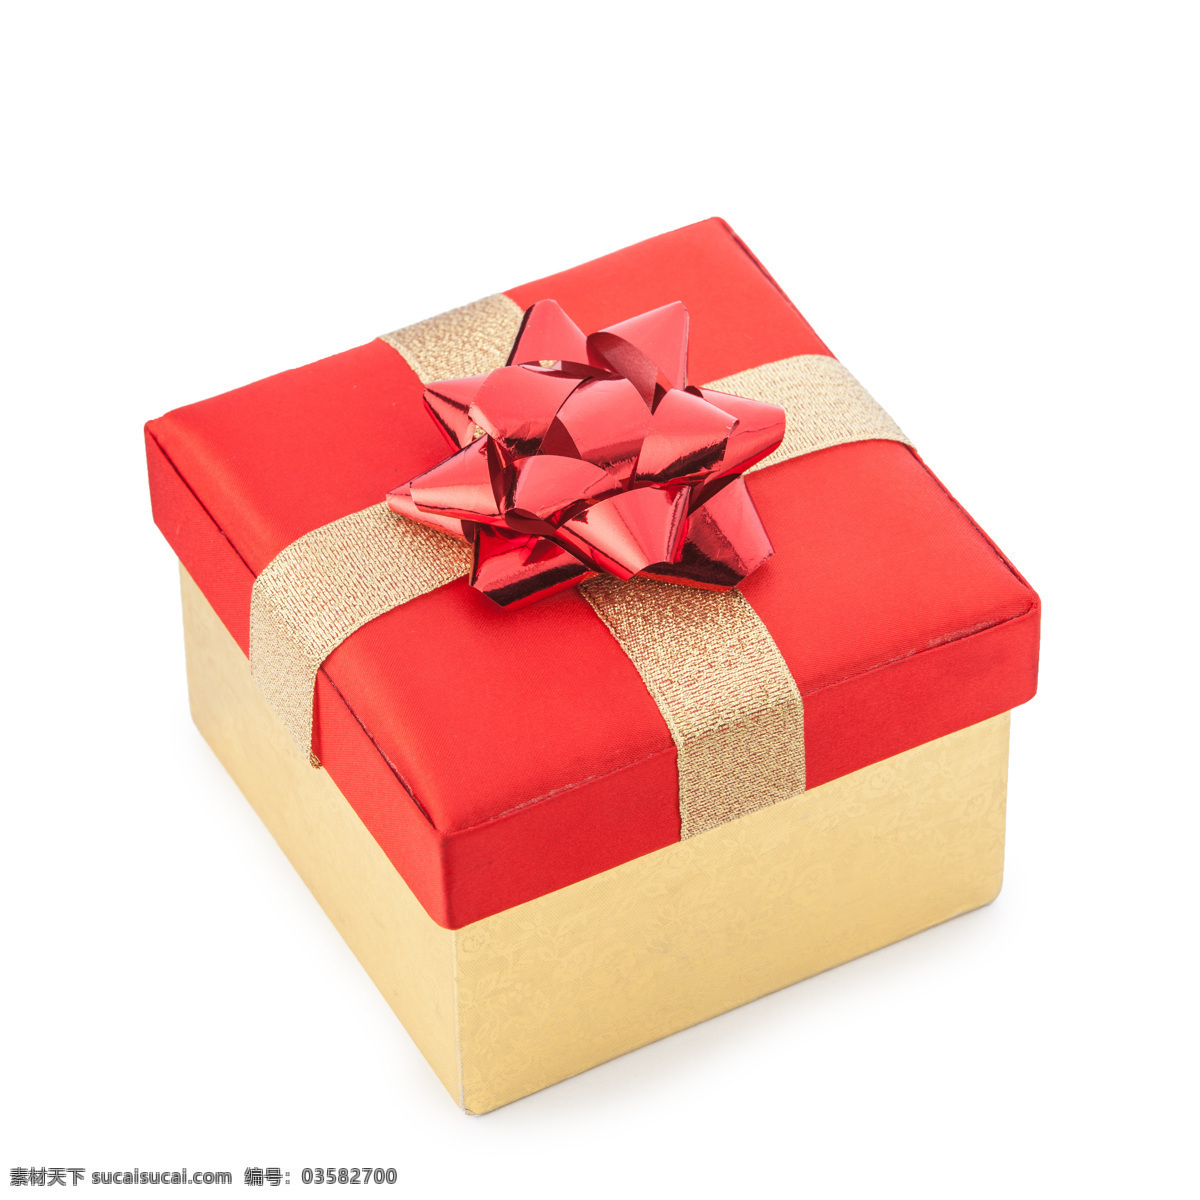 漂亮的礼物盒 漂亮 礼物盒 红色彩带花 盒子 圣诞节 节日庆典 生活百科 白色